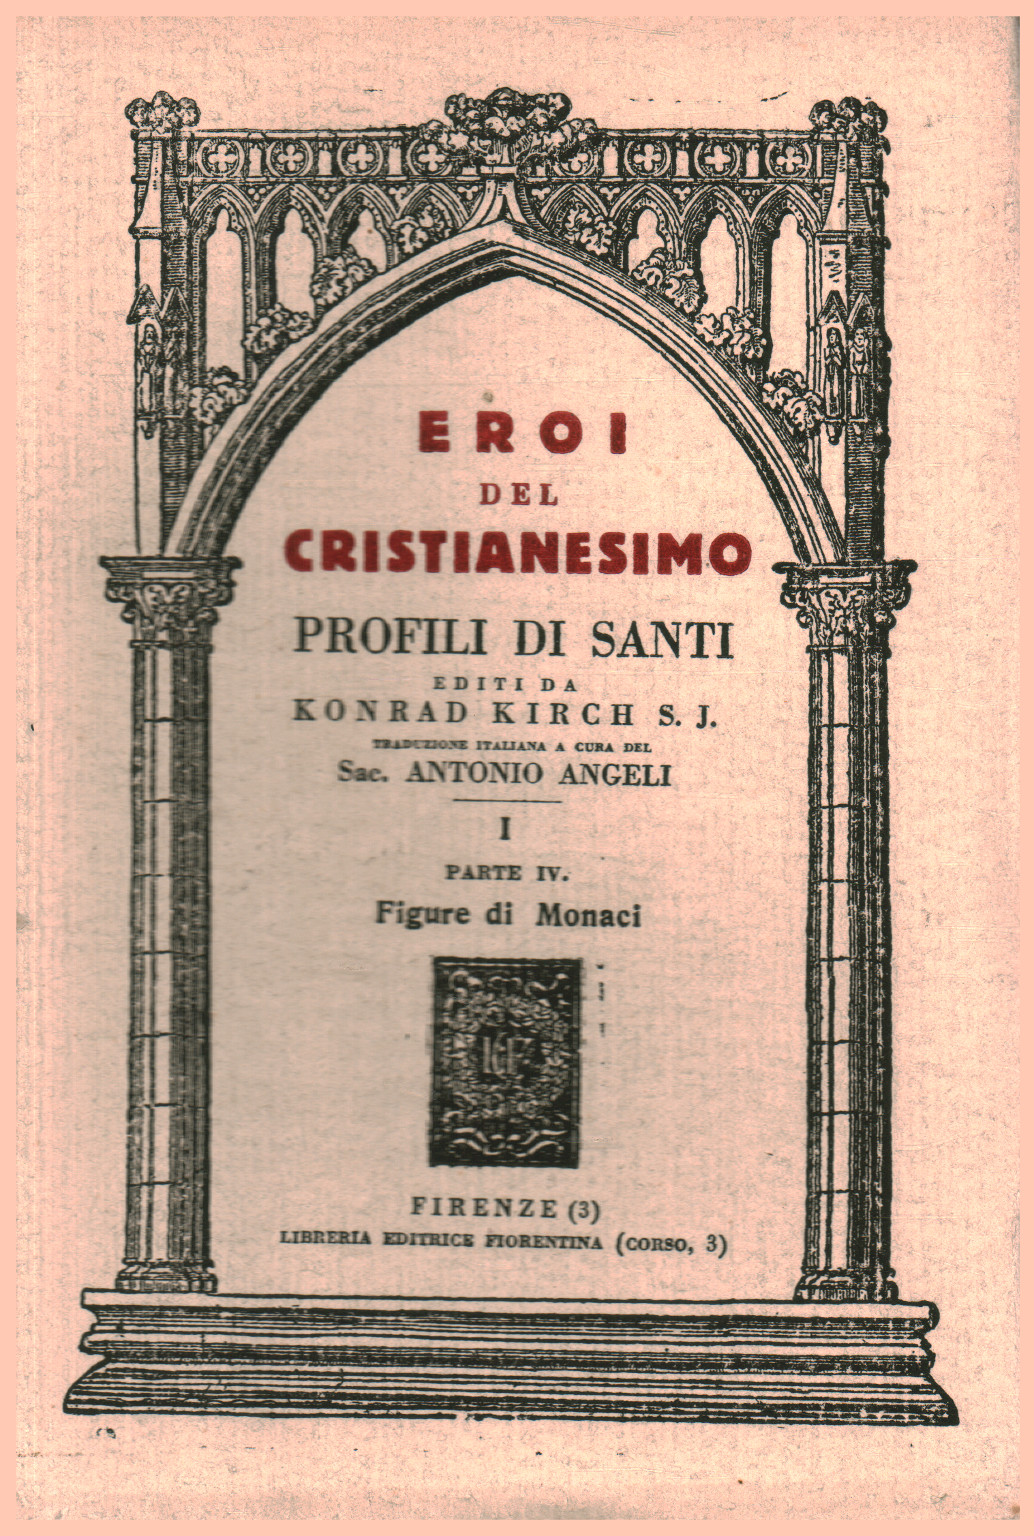 Eroi del Cristianesimo, profili di Santi Vol. I Pa, Konrad Kirch